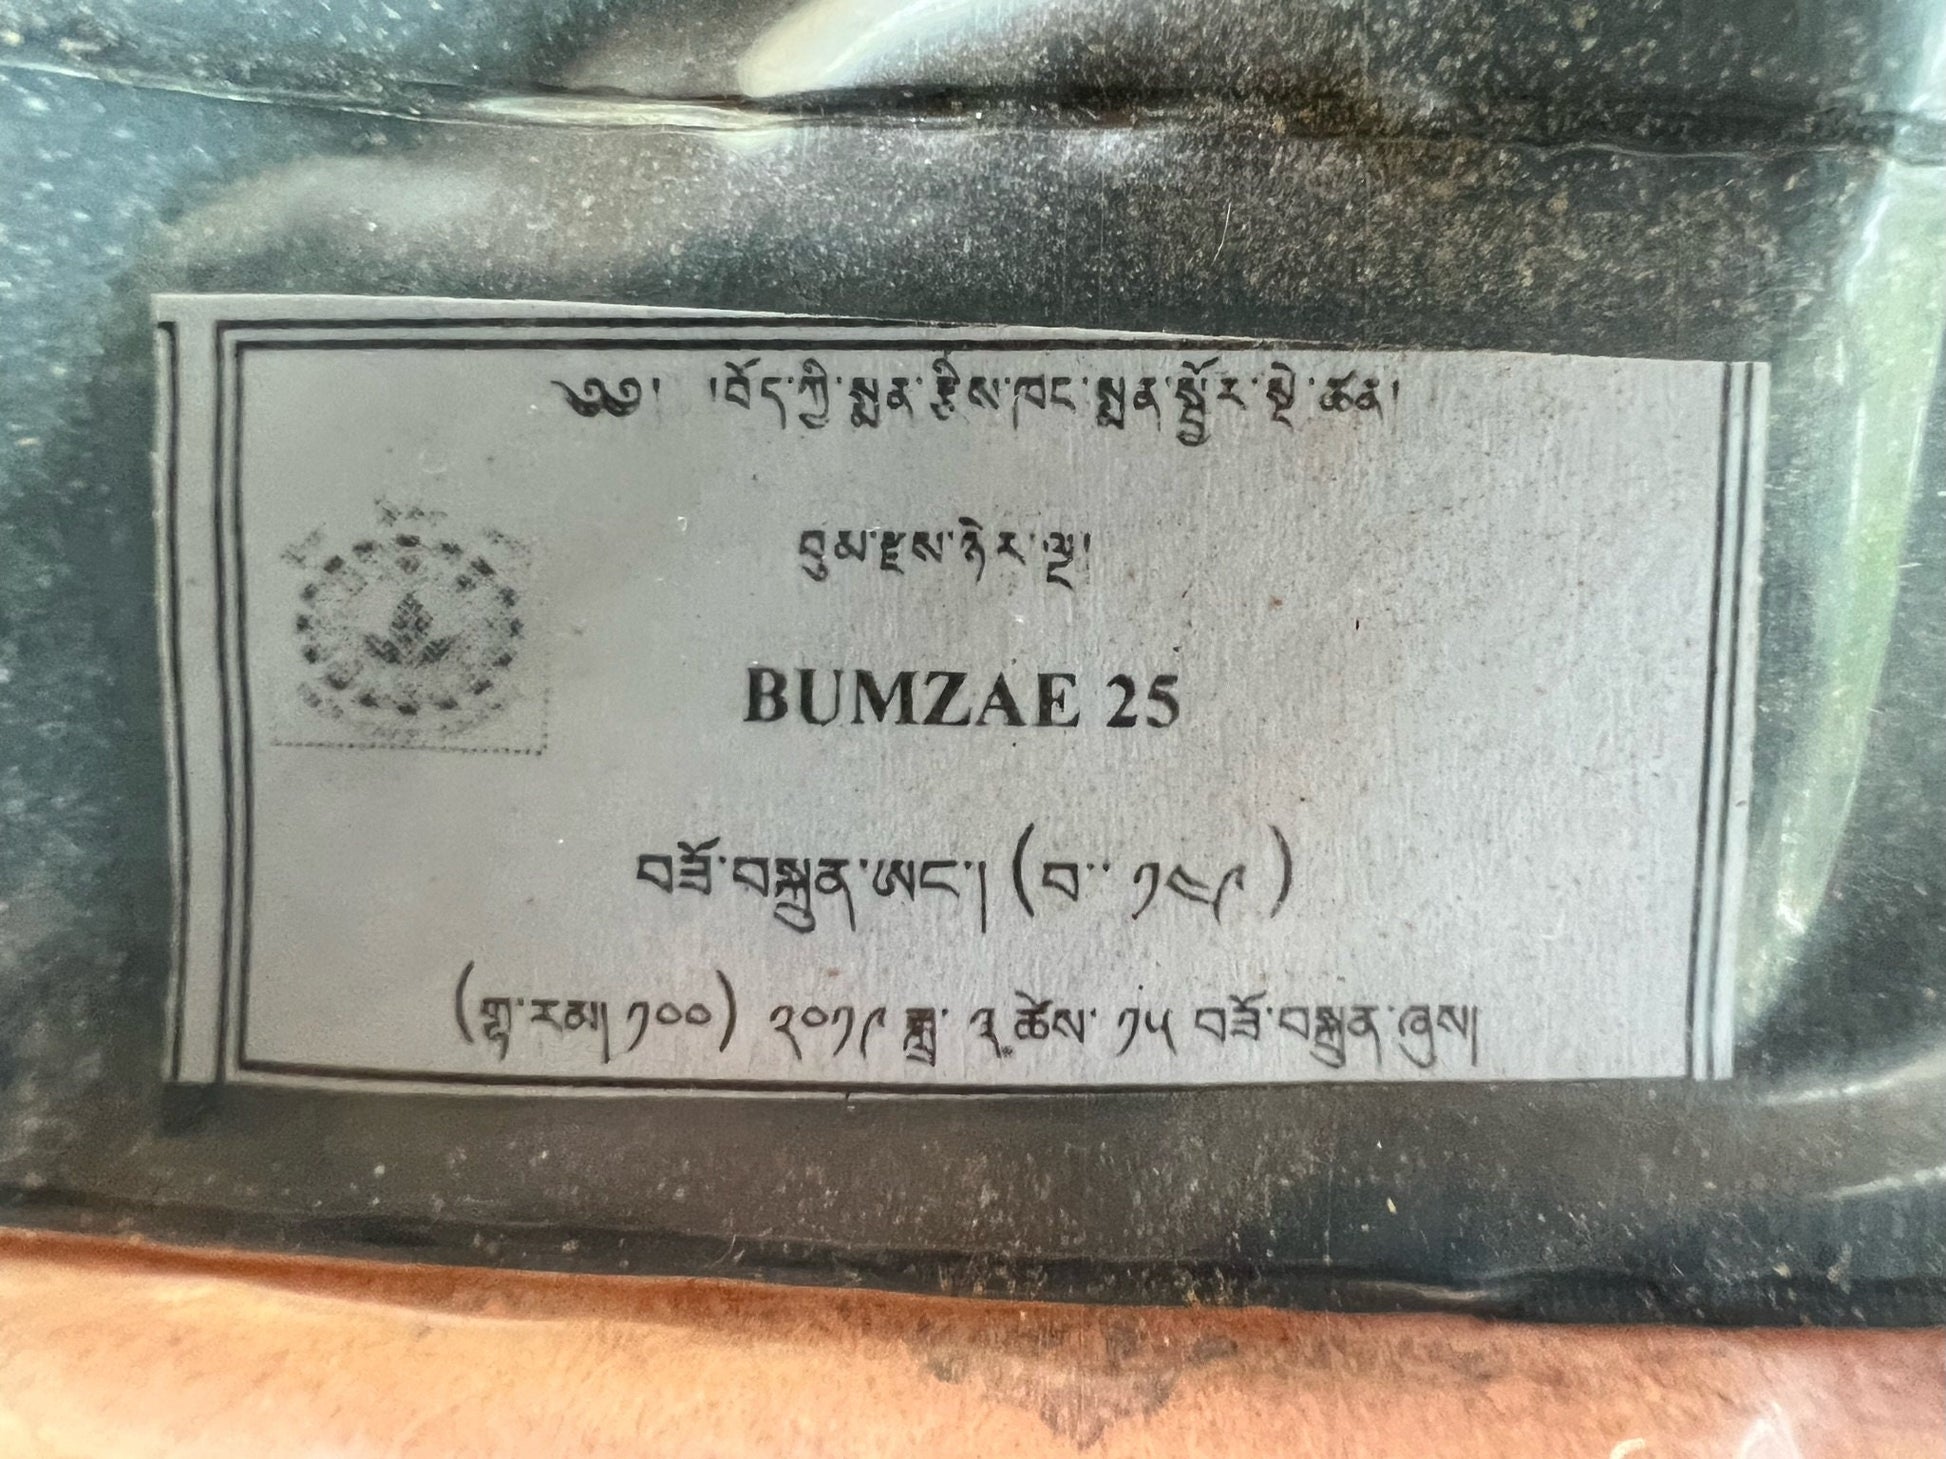 Sorig Bumzae Nyernga 25 Powder| 50 grams